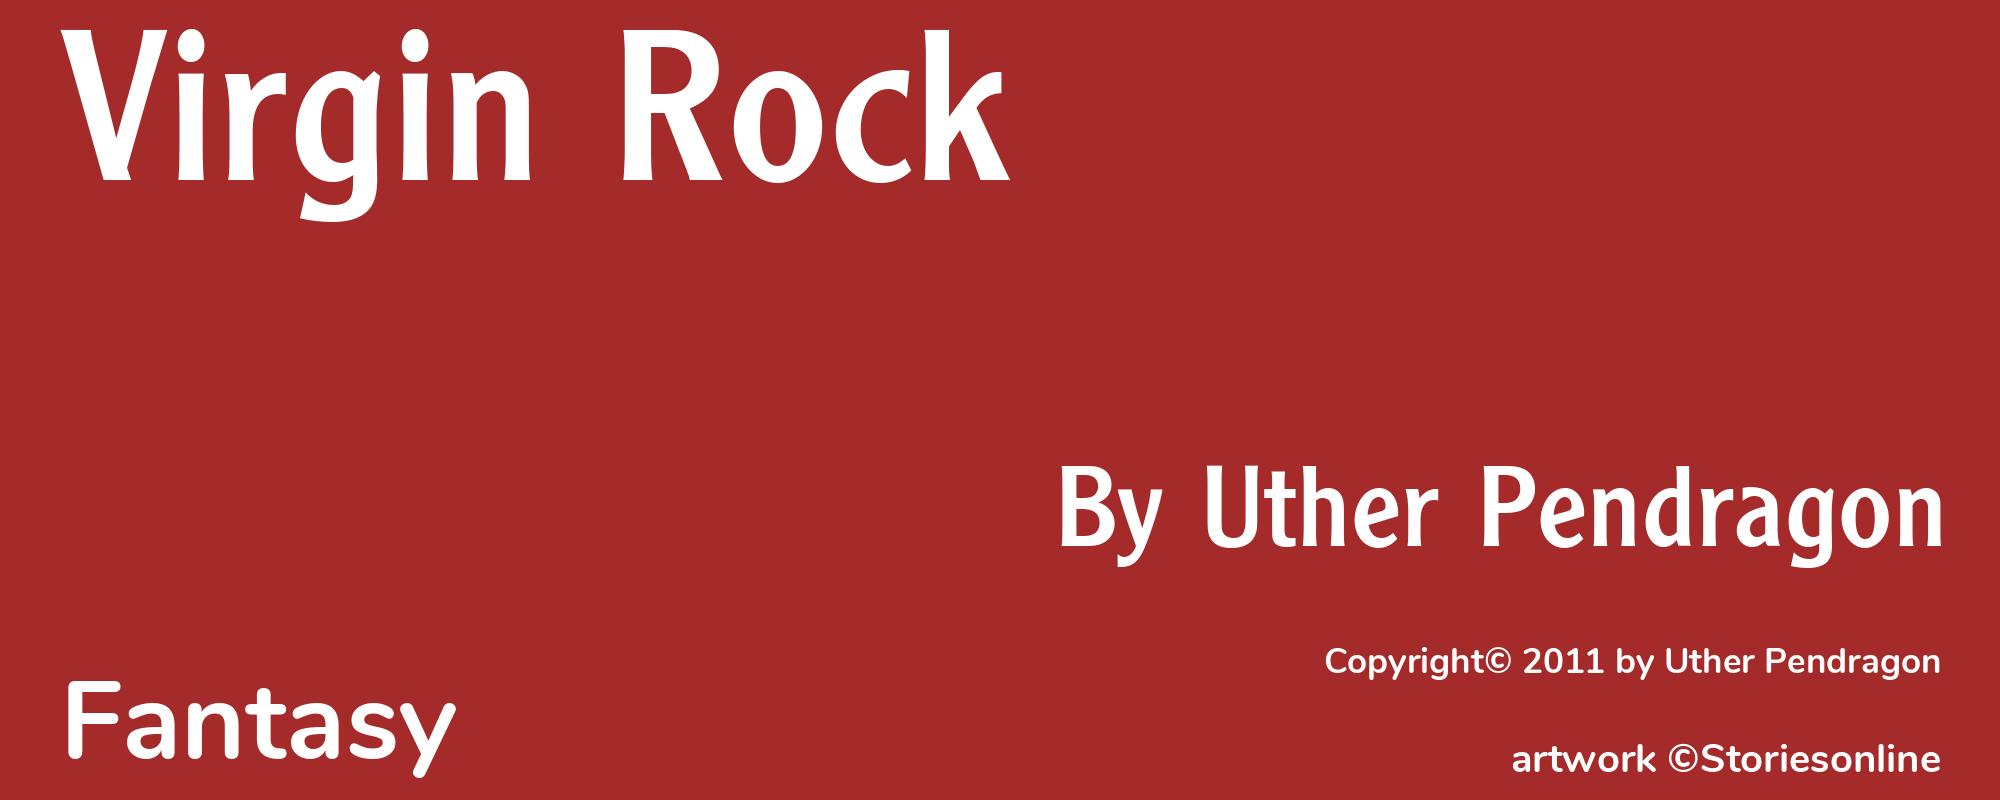 Virgin Rock - Cover